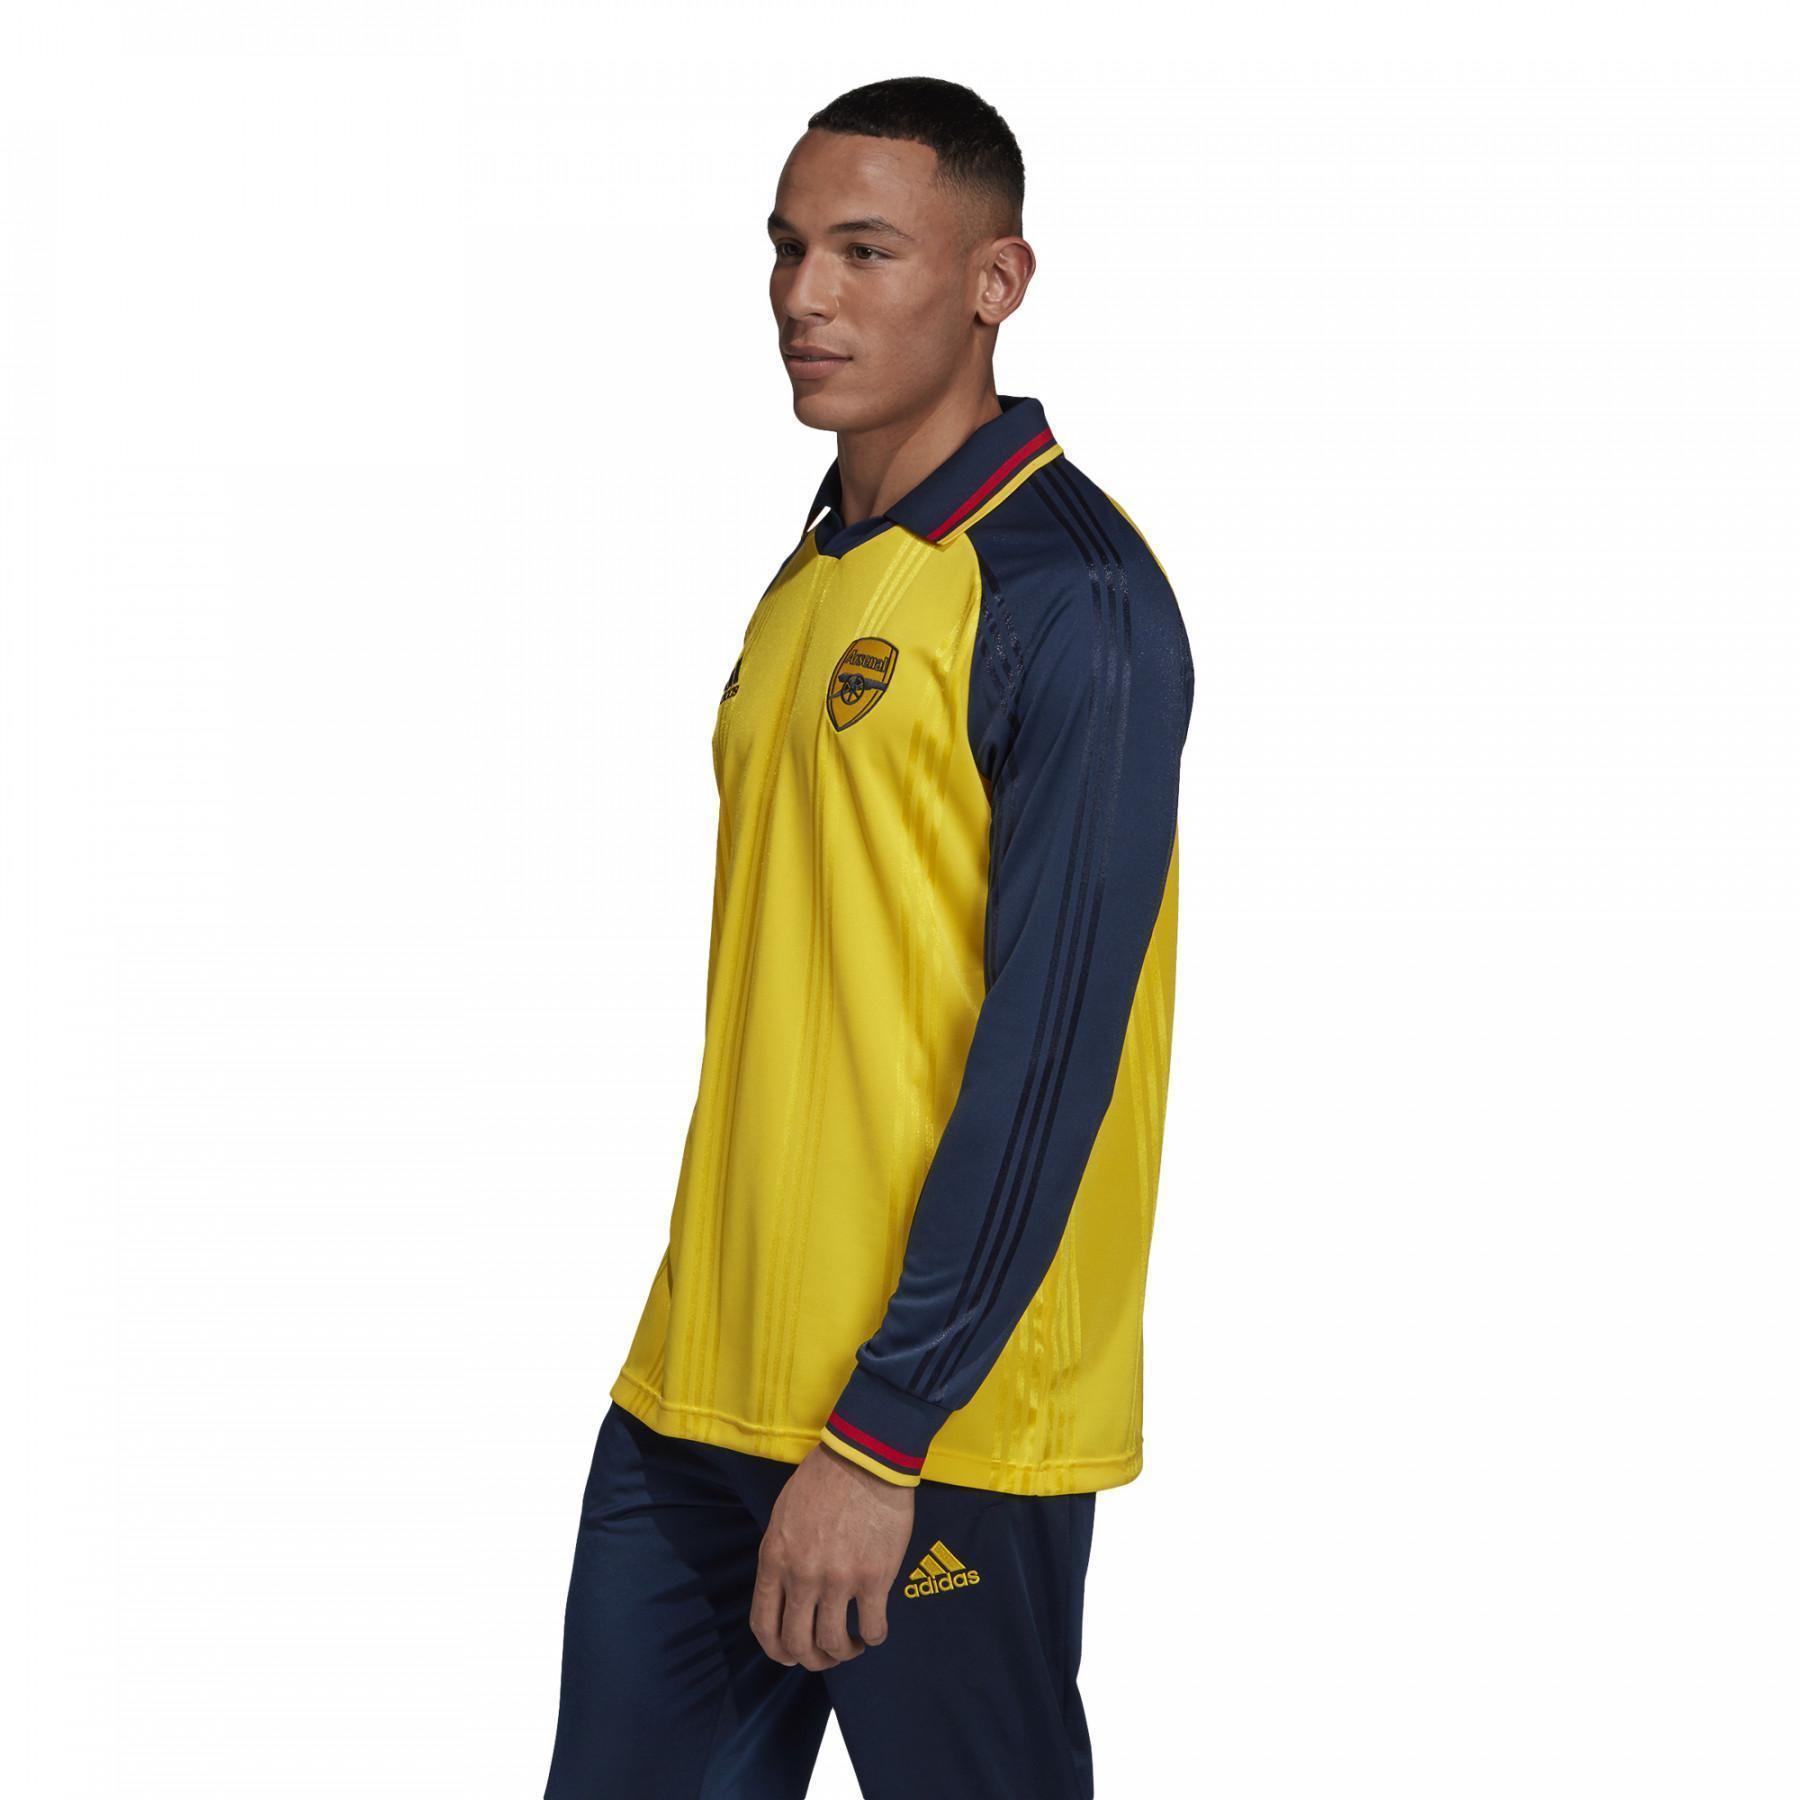 Langarm-T-Shirt Arsenal Icon